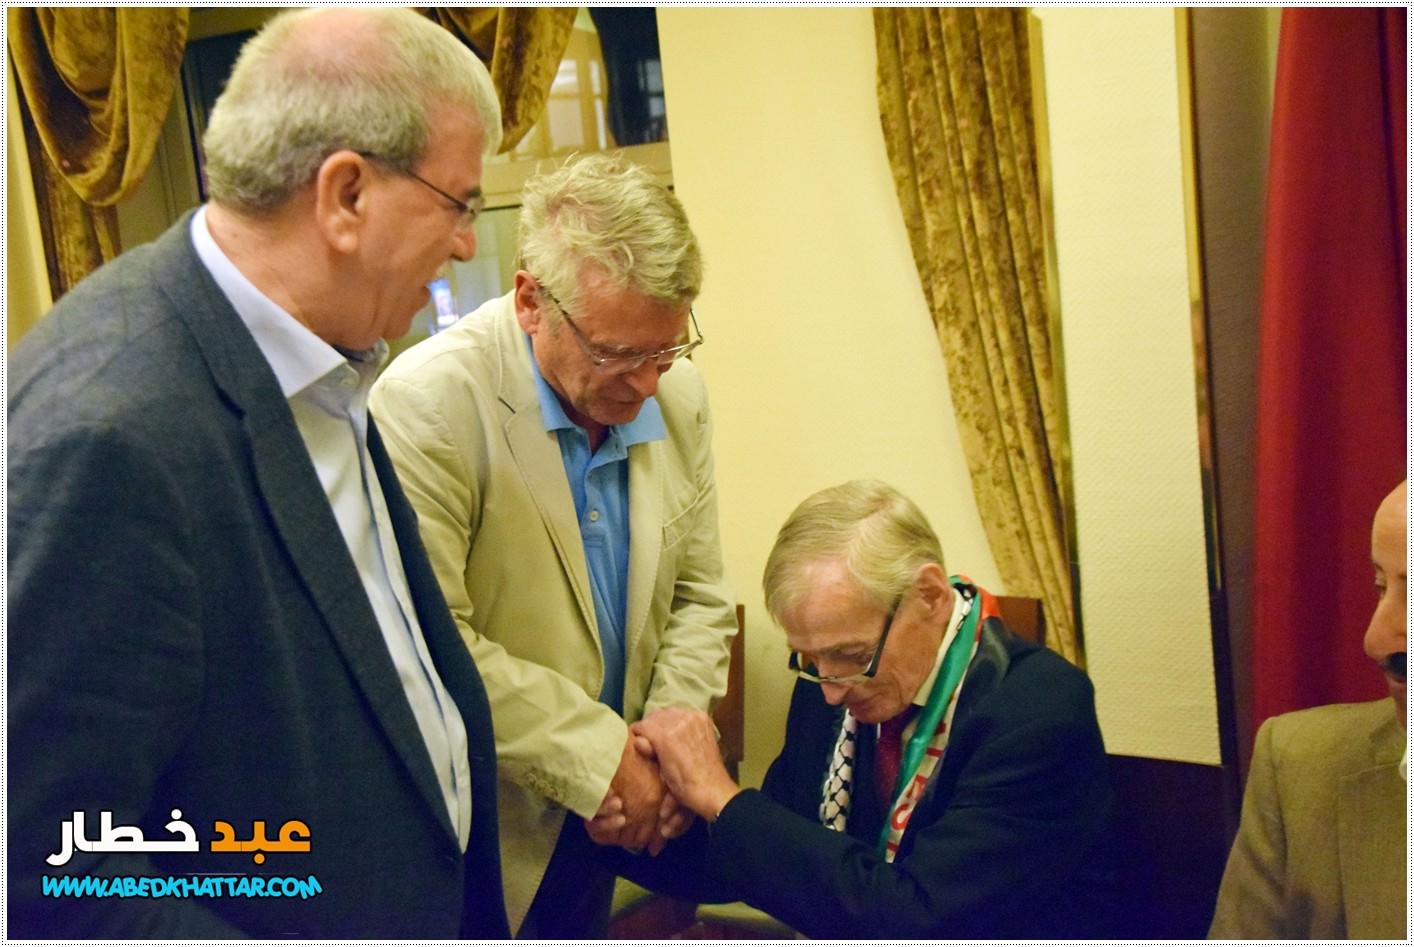 الجمعية الطبية الألمانية العربية في برلين تكرم وتودع البروفسور الالماني الدكتور سيغفريد فوغل